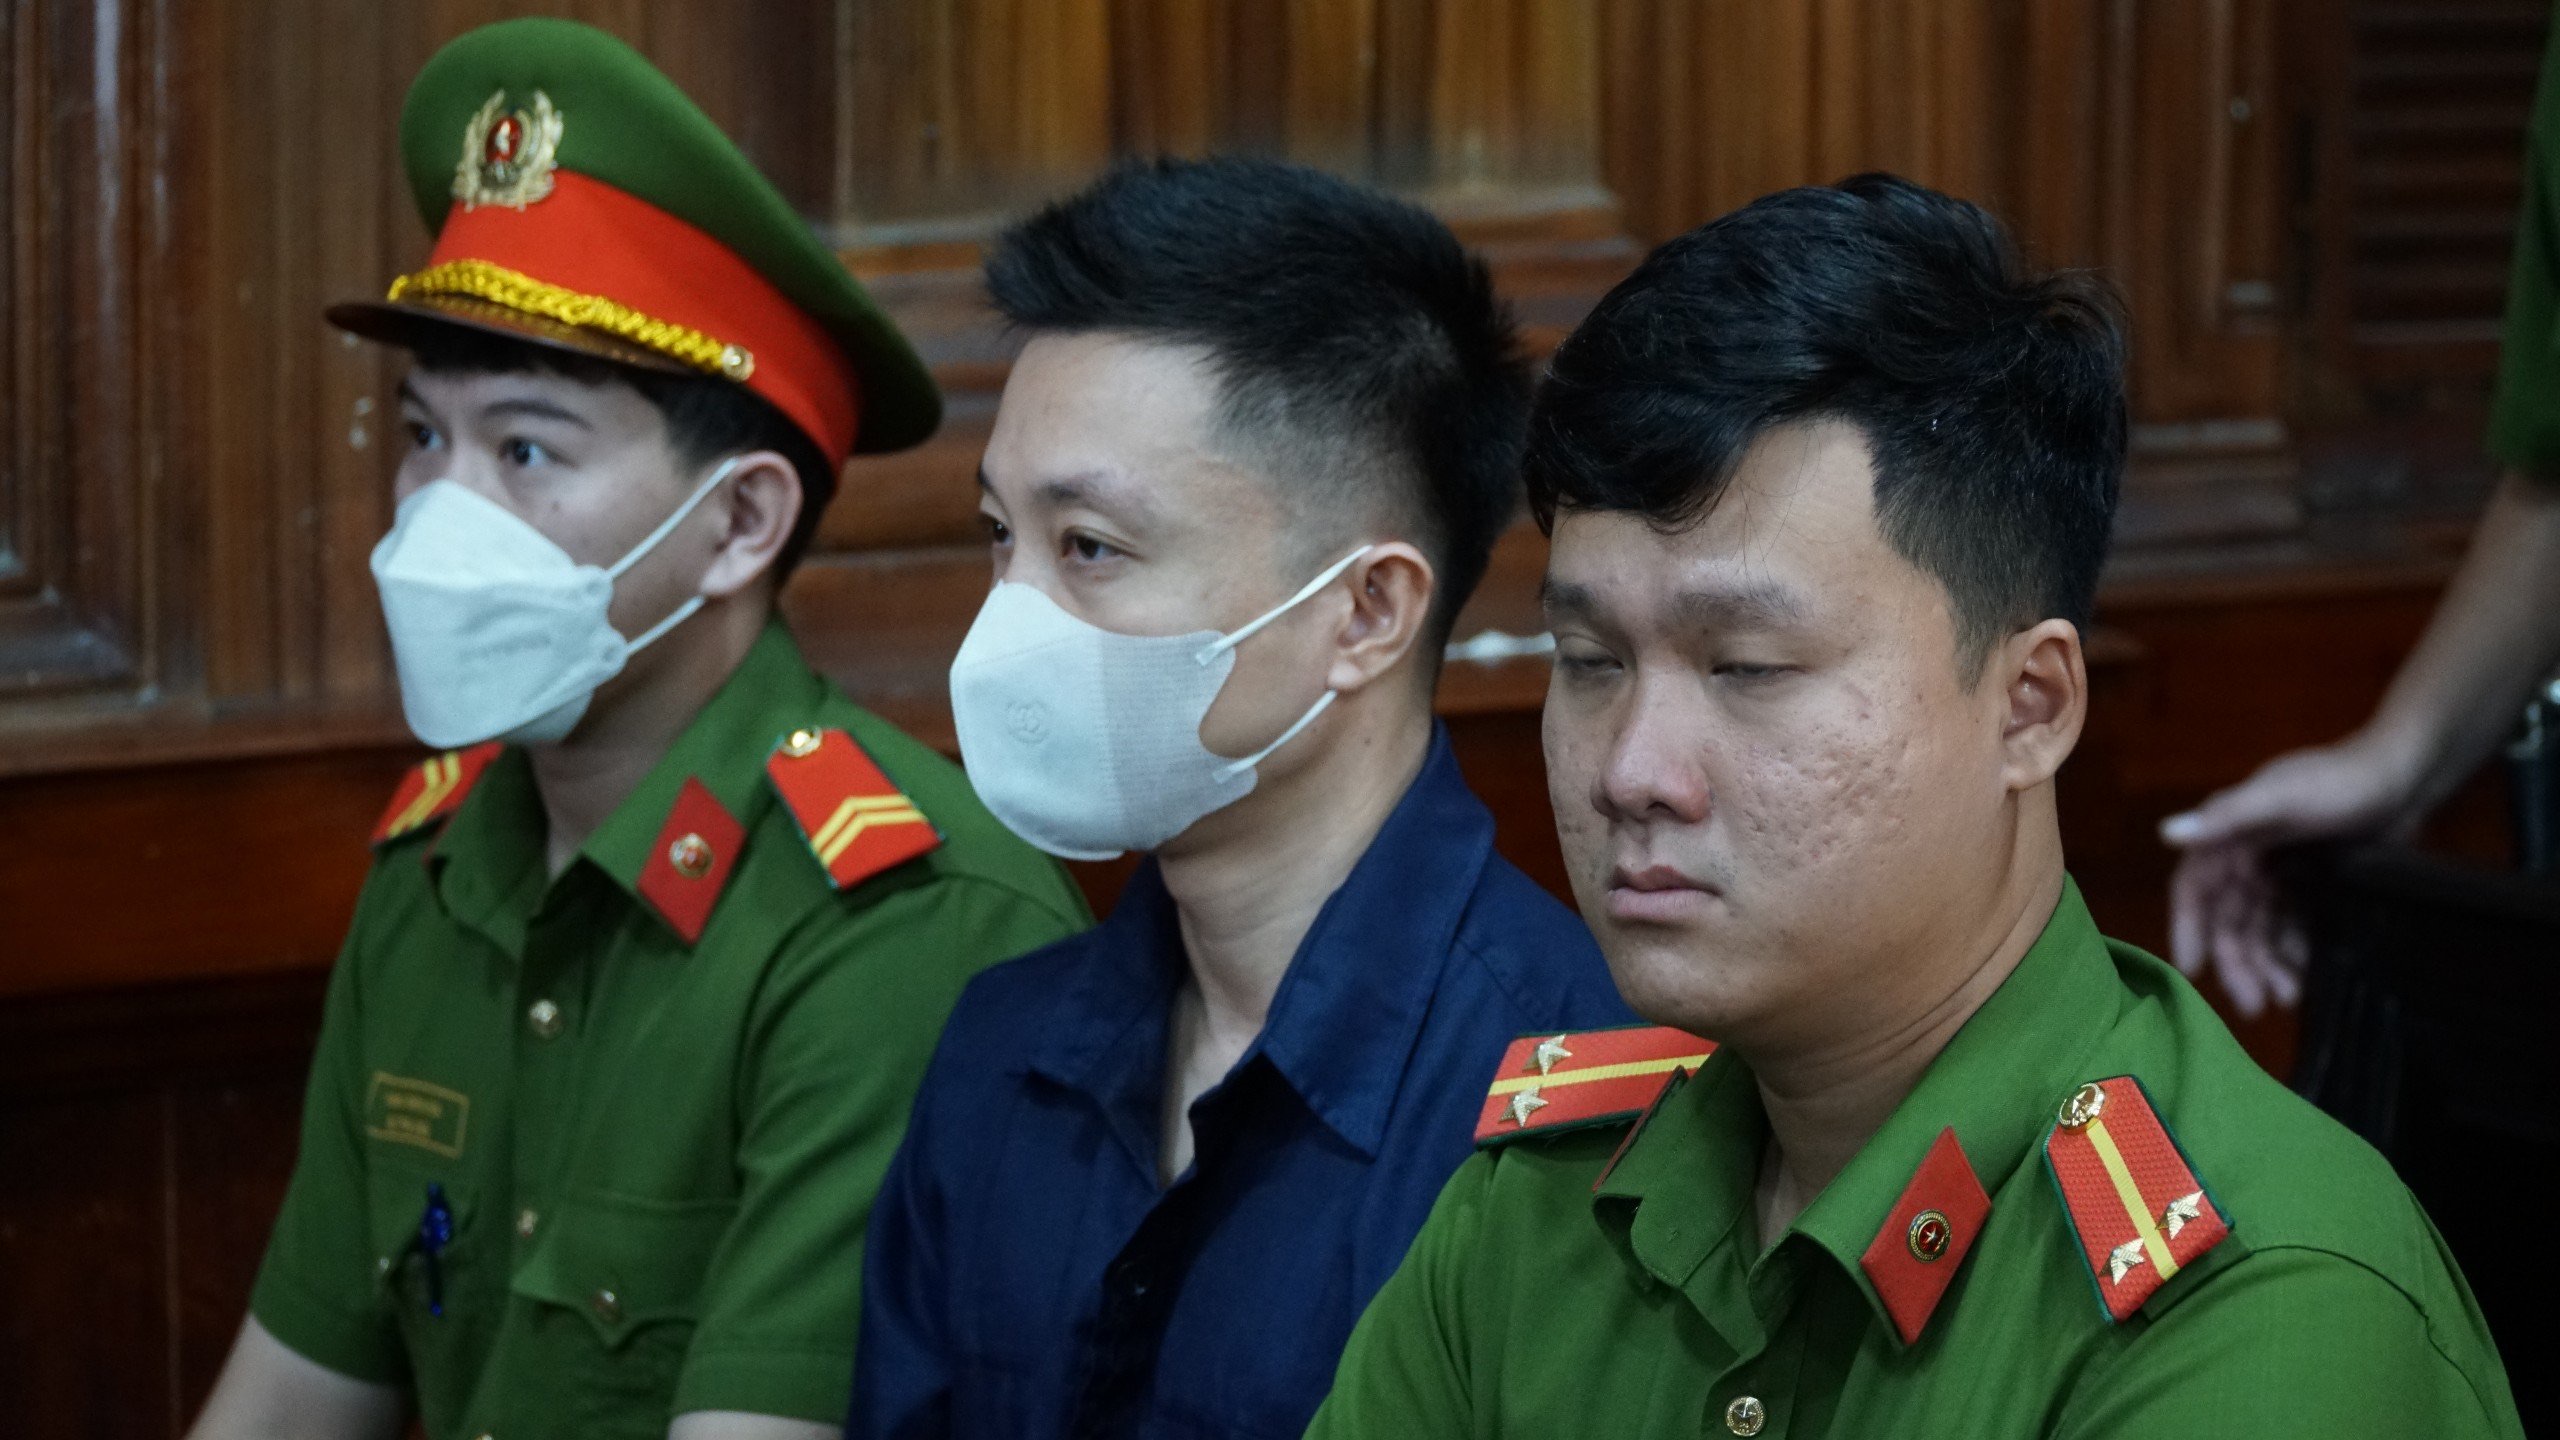 Trần Xuân Đông (36 tuổi, thầy dạy lái xe của Ngọc Trinh) bị truy tố về tội Gây rối trật tự công cộng và Sử dụng tài liệu giả của cơ quan tổ chức.  